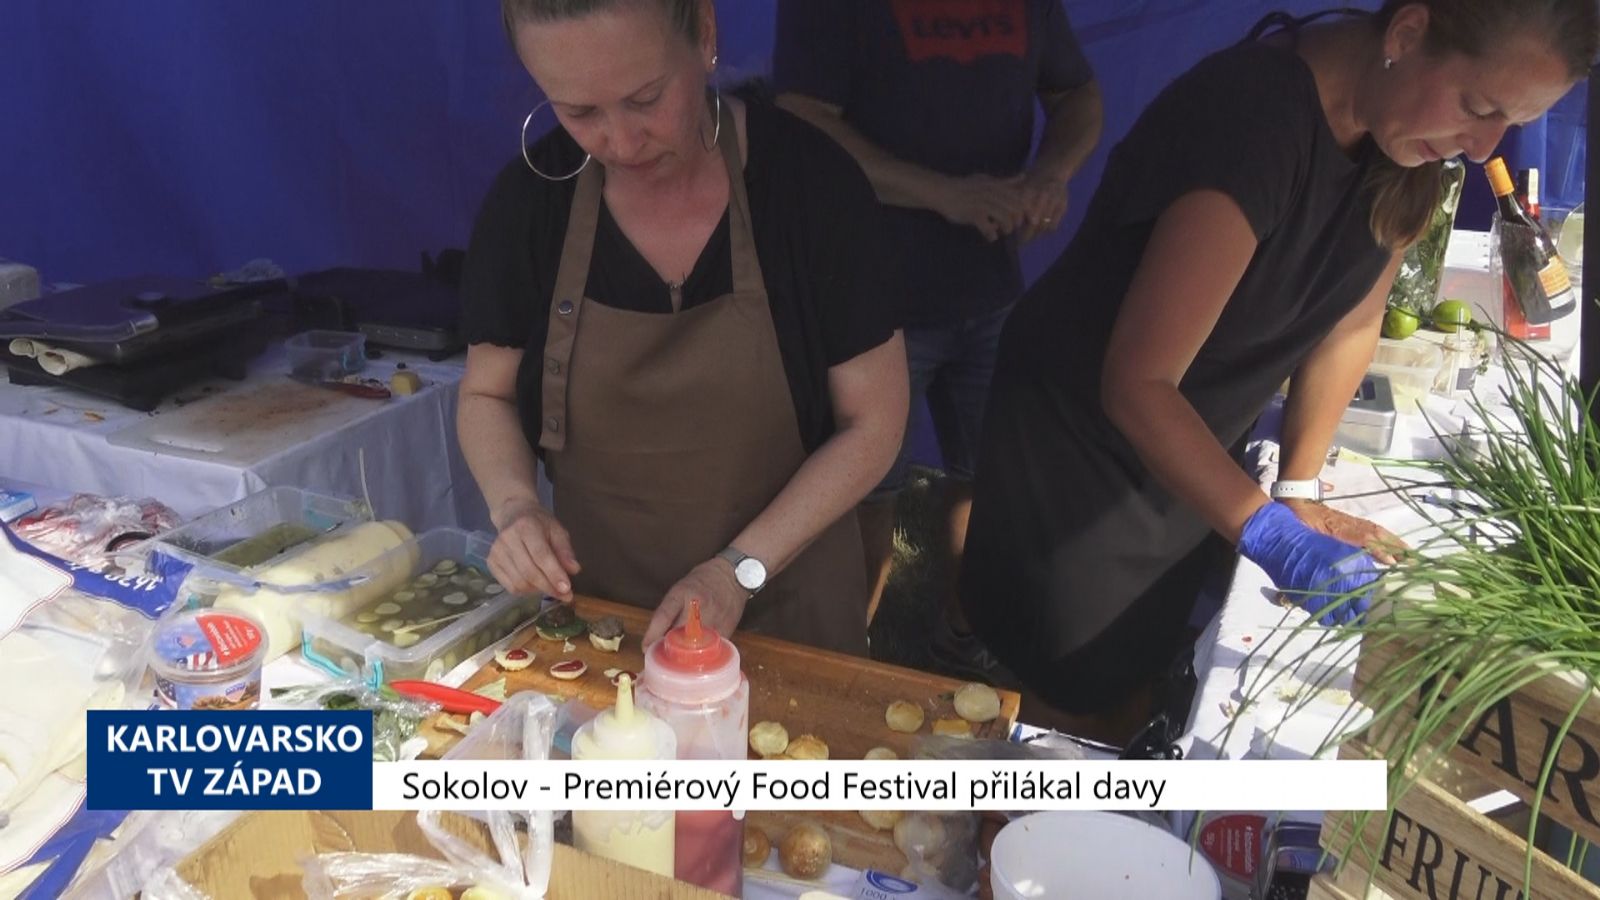 Sokolov: Premiérový Food festival přilákal davy (TV Západ)